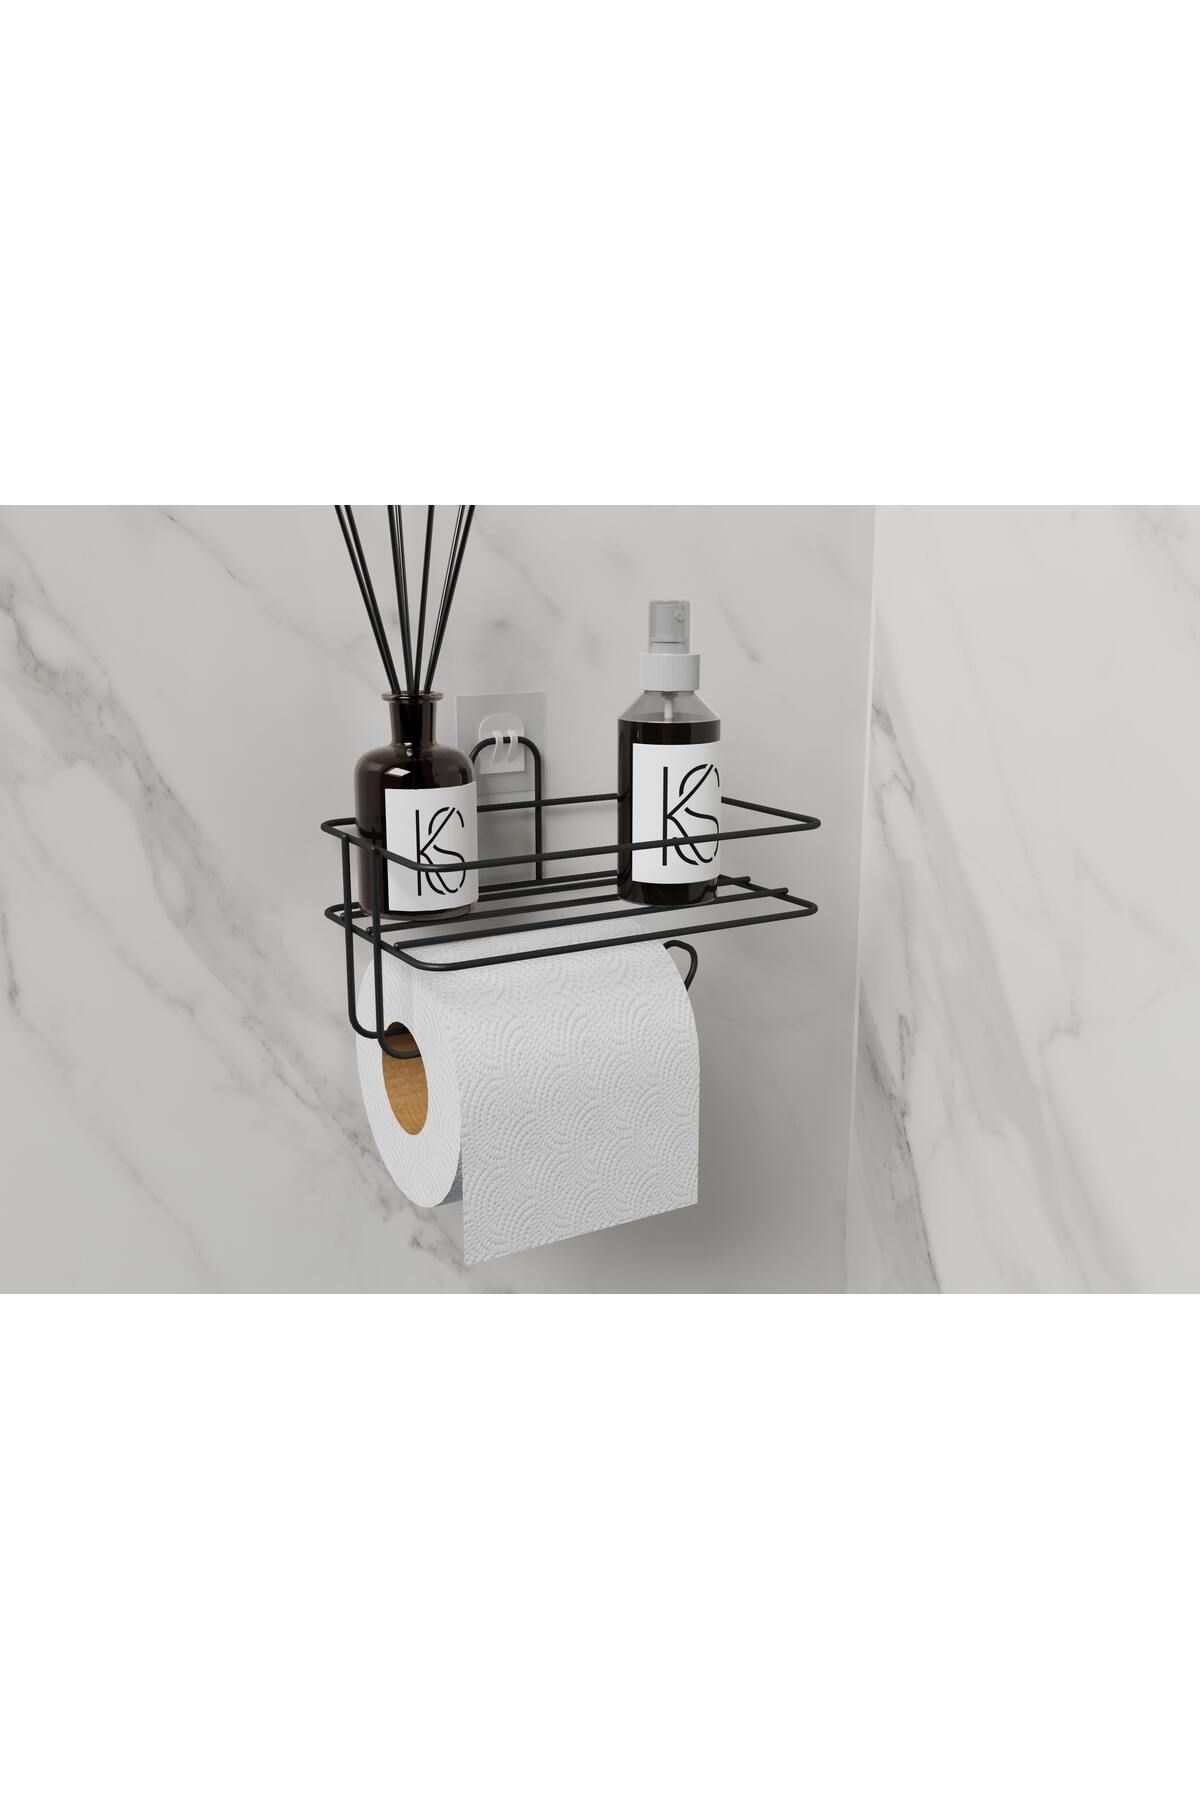 KILINÇ STORE Yapışkanlı Raflı Siyah Tuvalet Kağıtlığı Tutacağı Askısı Metal Tuvalet Kağıtlık Wc Kağıt Tutacağı